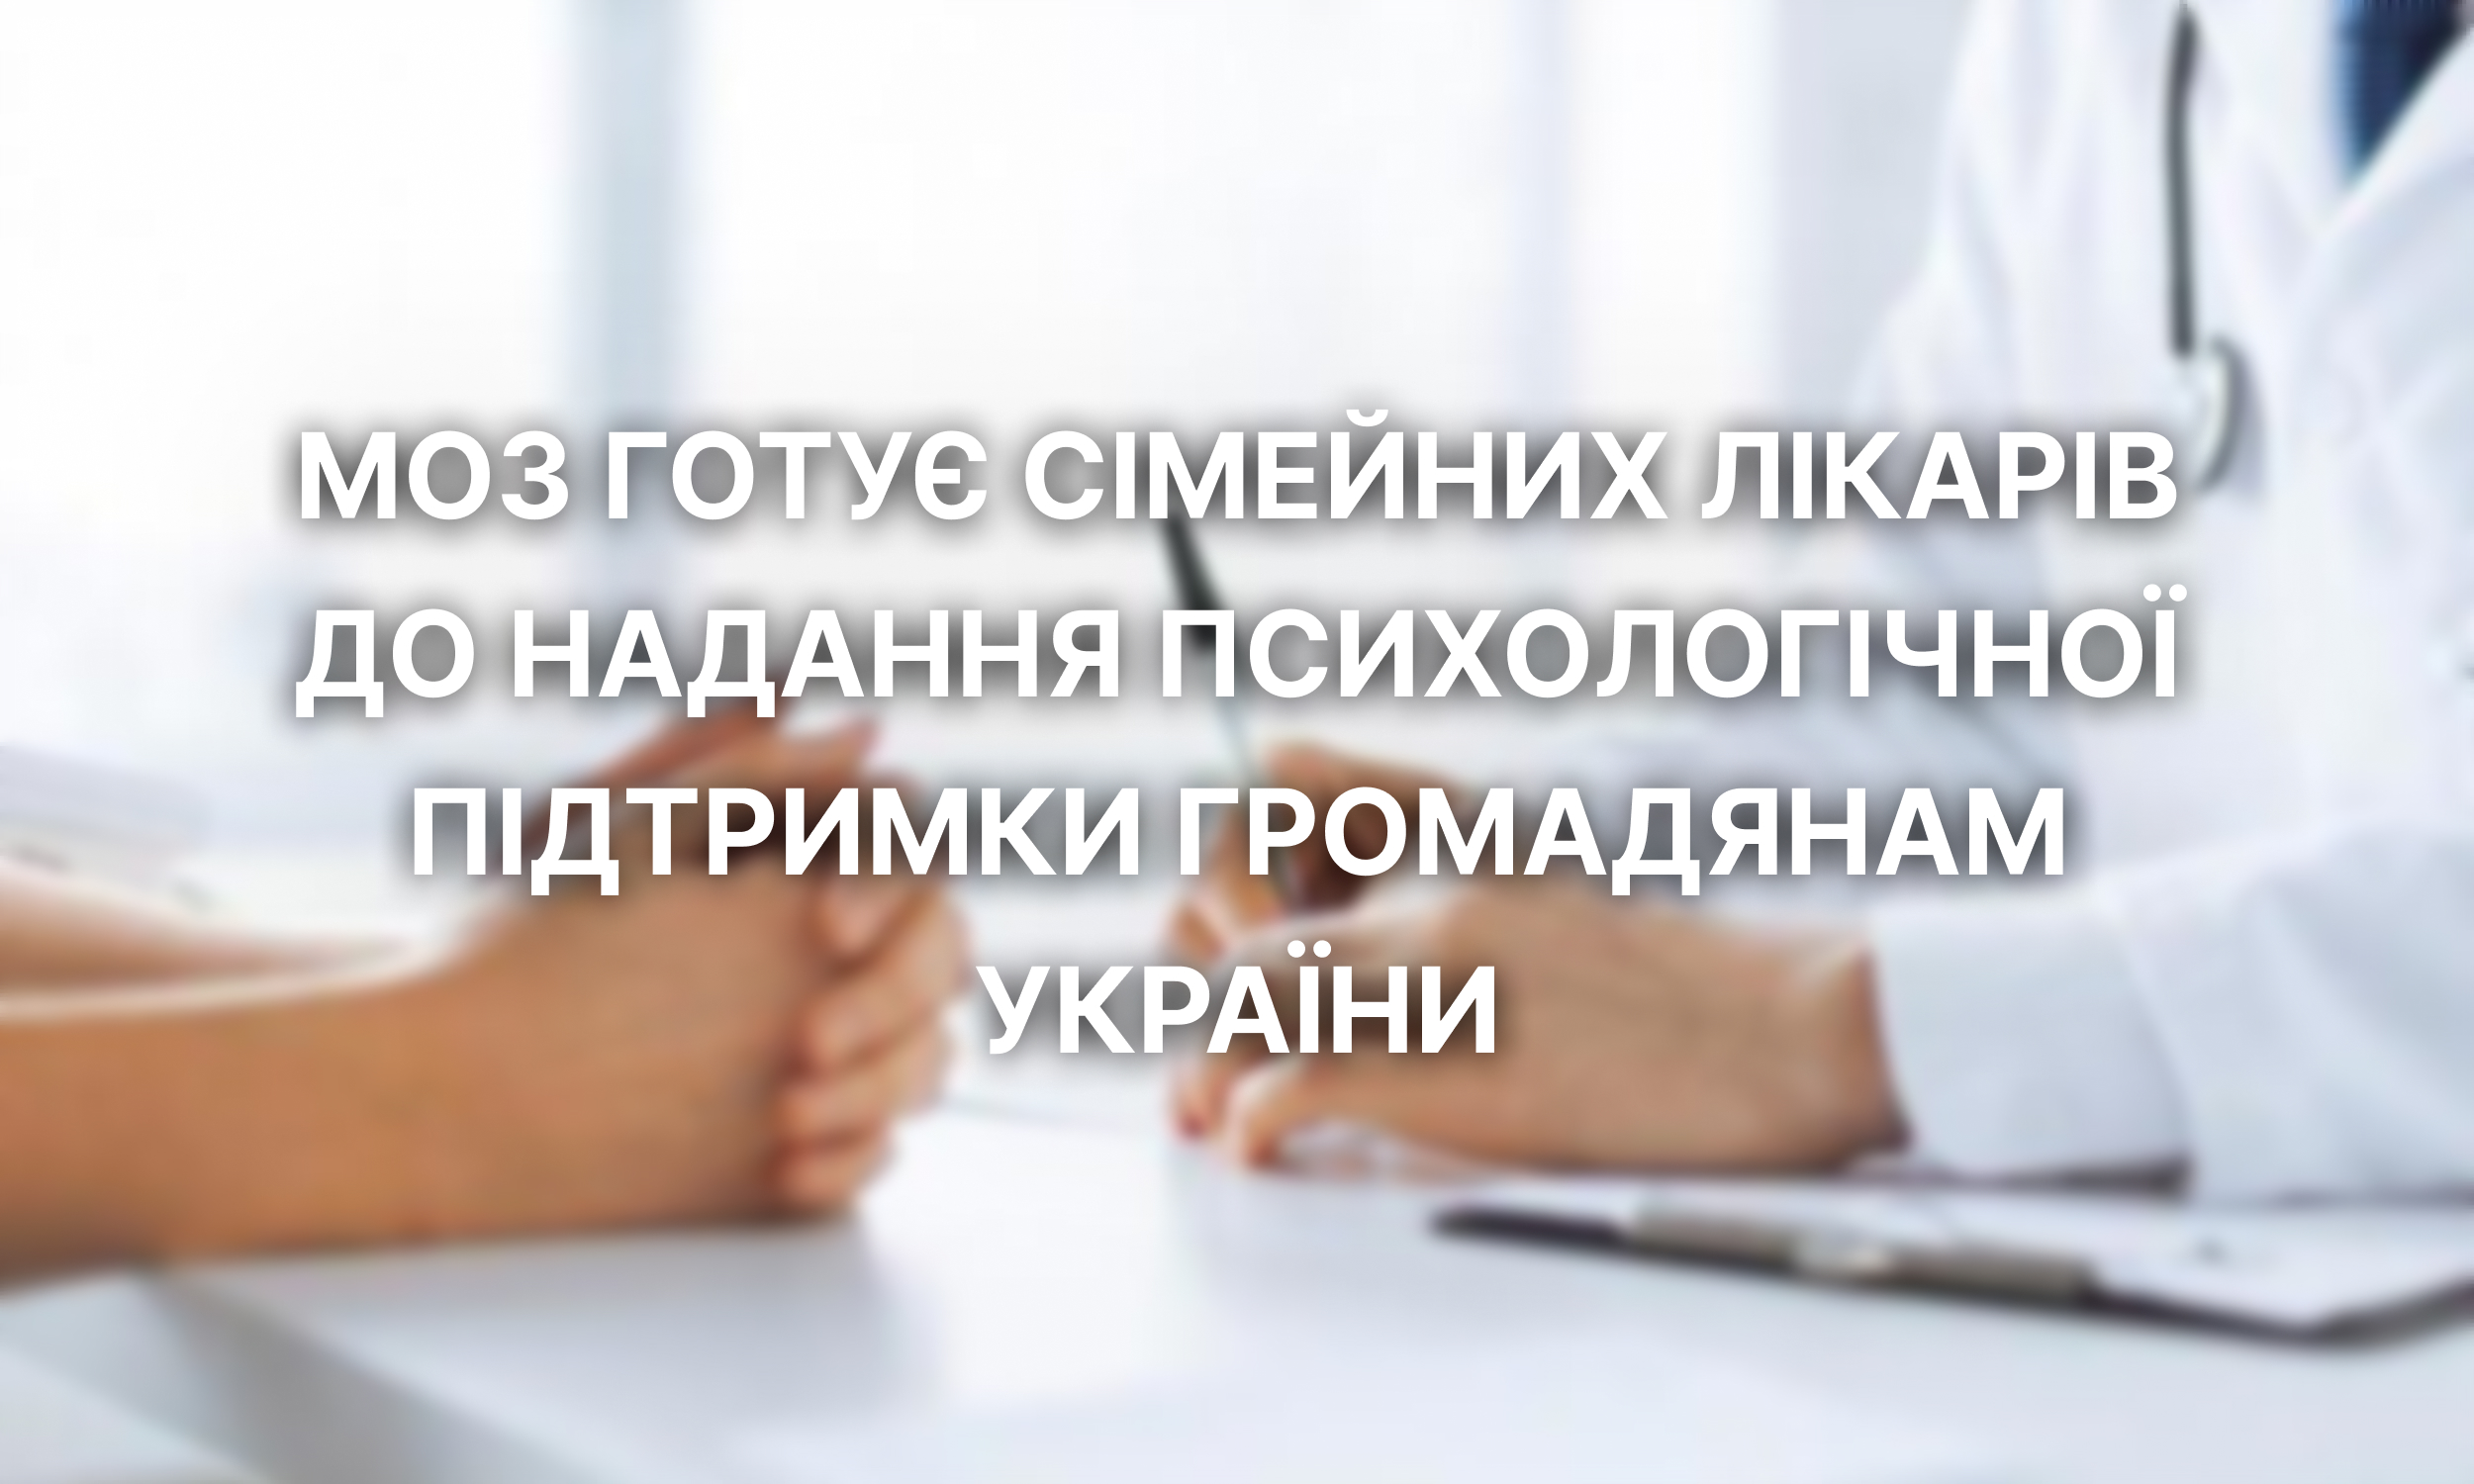 МОЗ готує сімейних лікарів до надання психологічної підтримки громадянам України